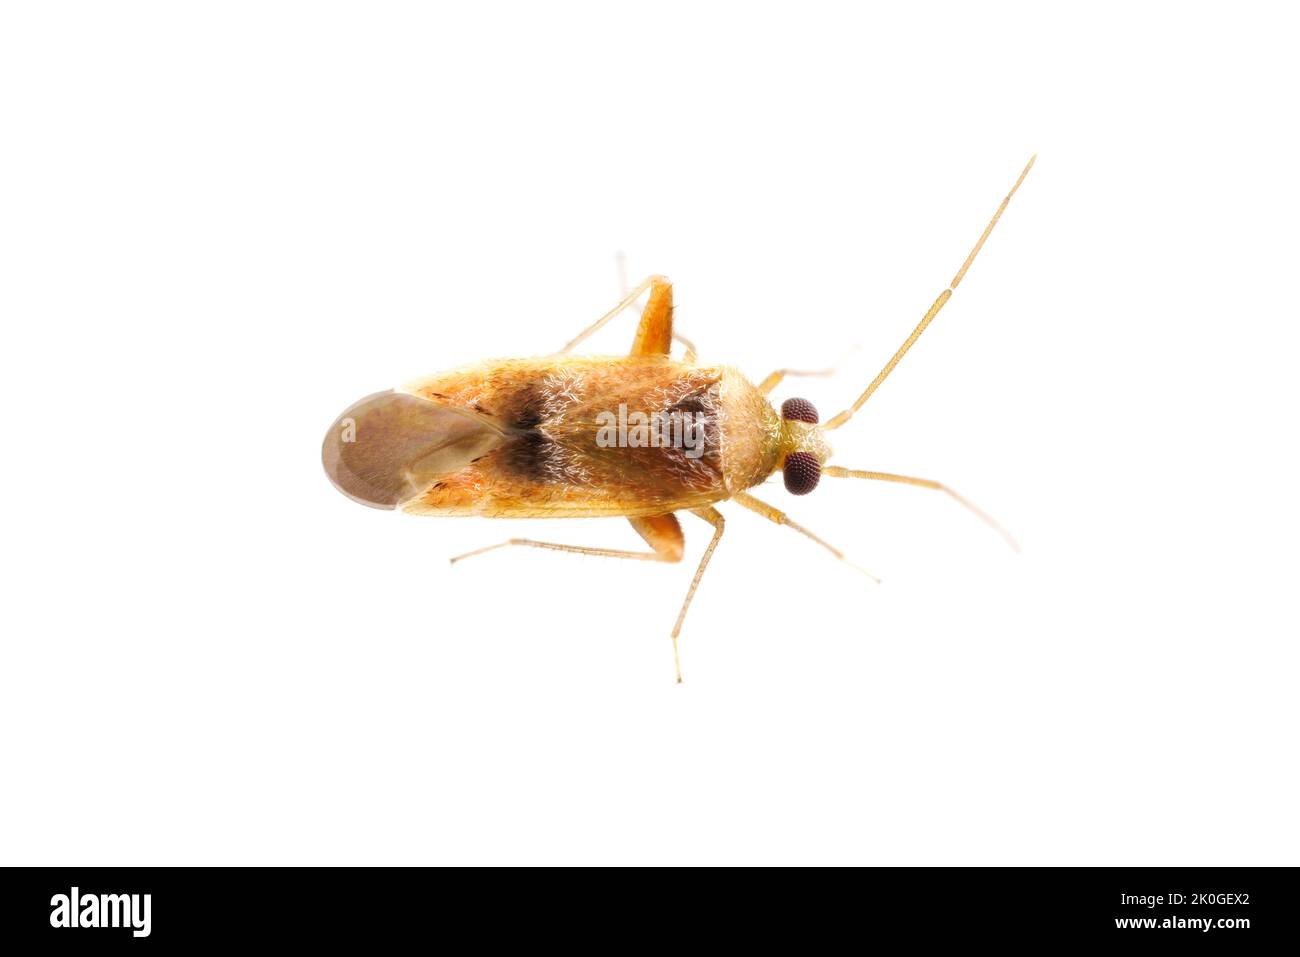 Plant Bug (Parthenicus juniperi) isolated on white background. Stock Photo